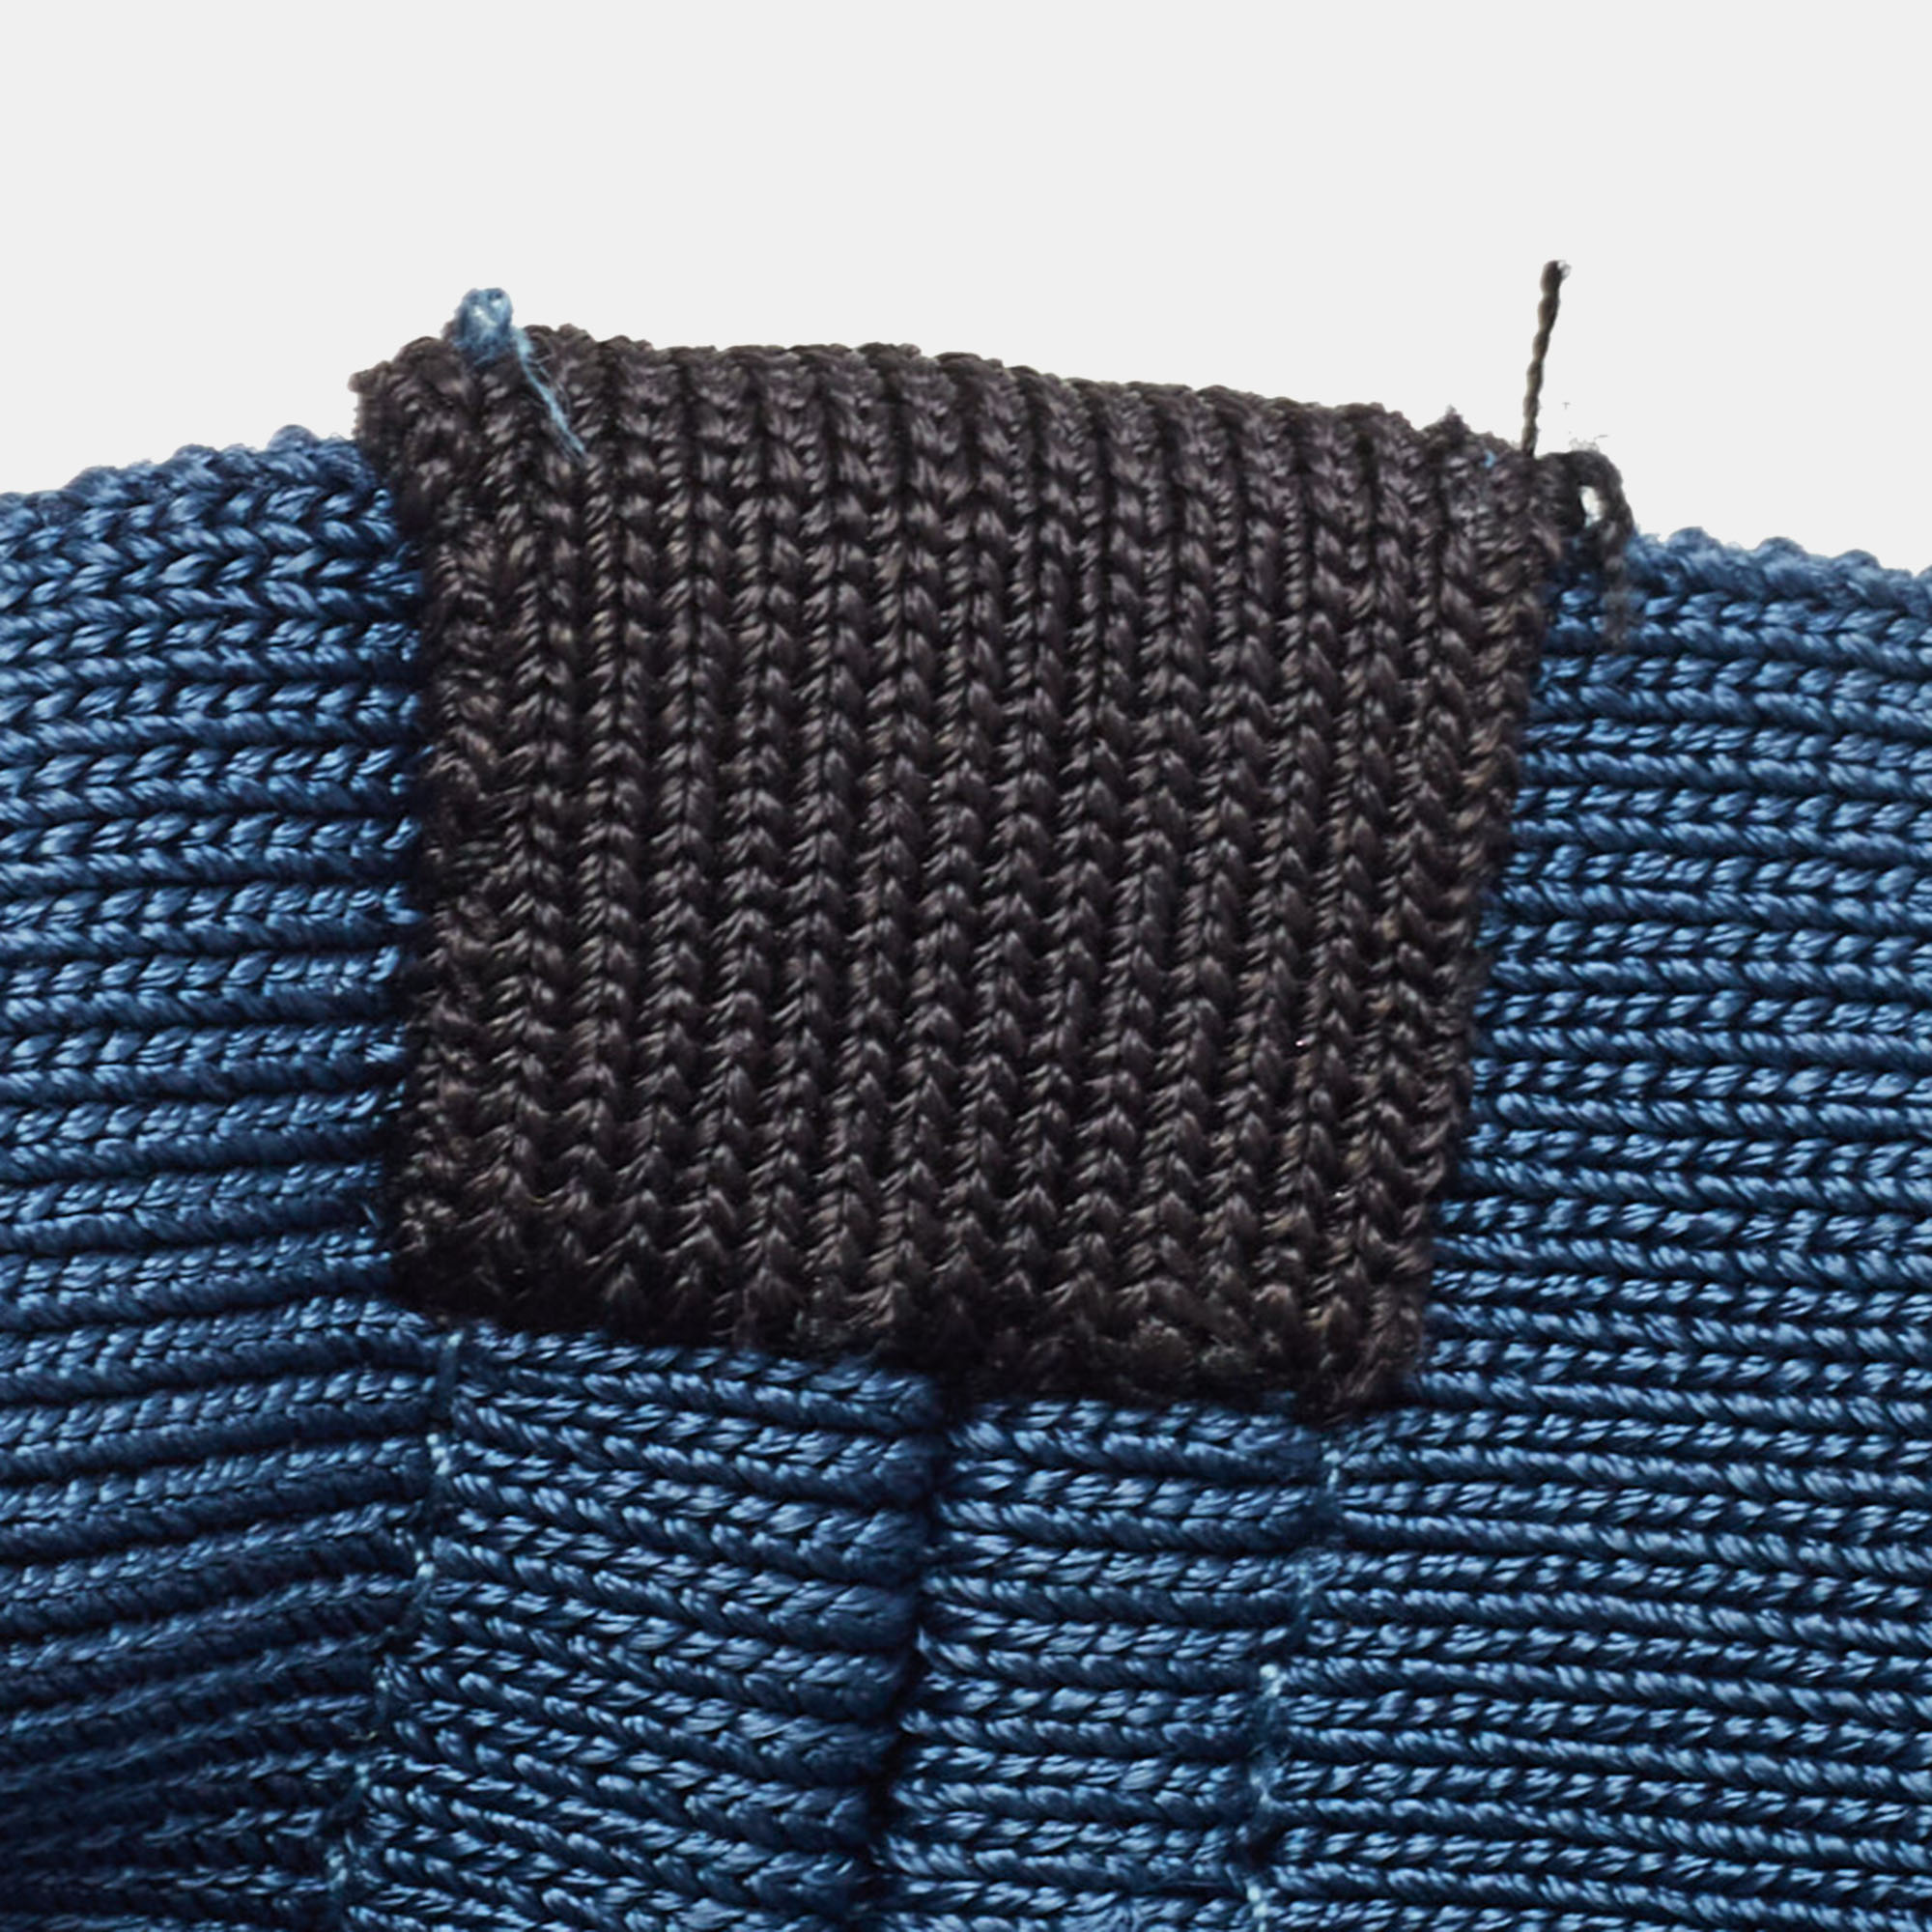 Herve Leger Blue/Black Knit Mini Skirt XS